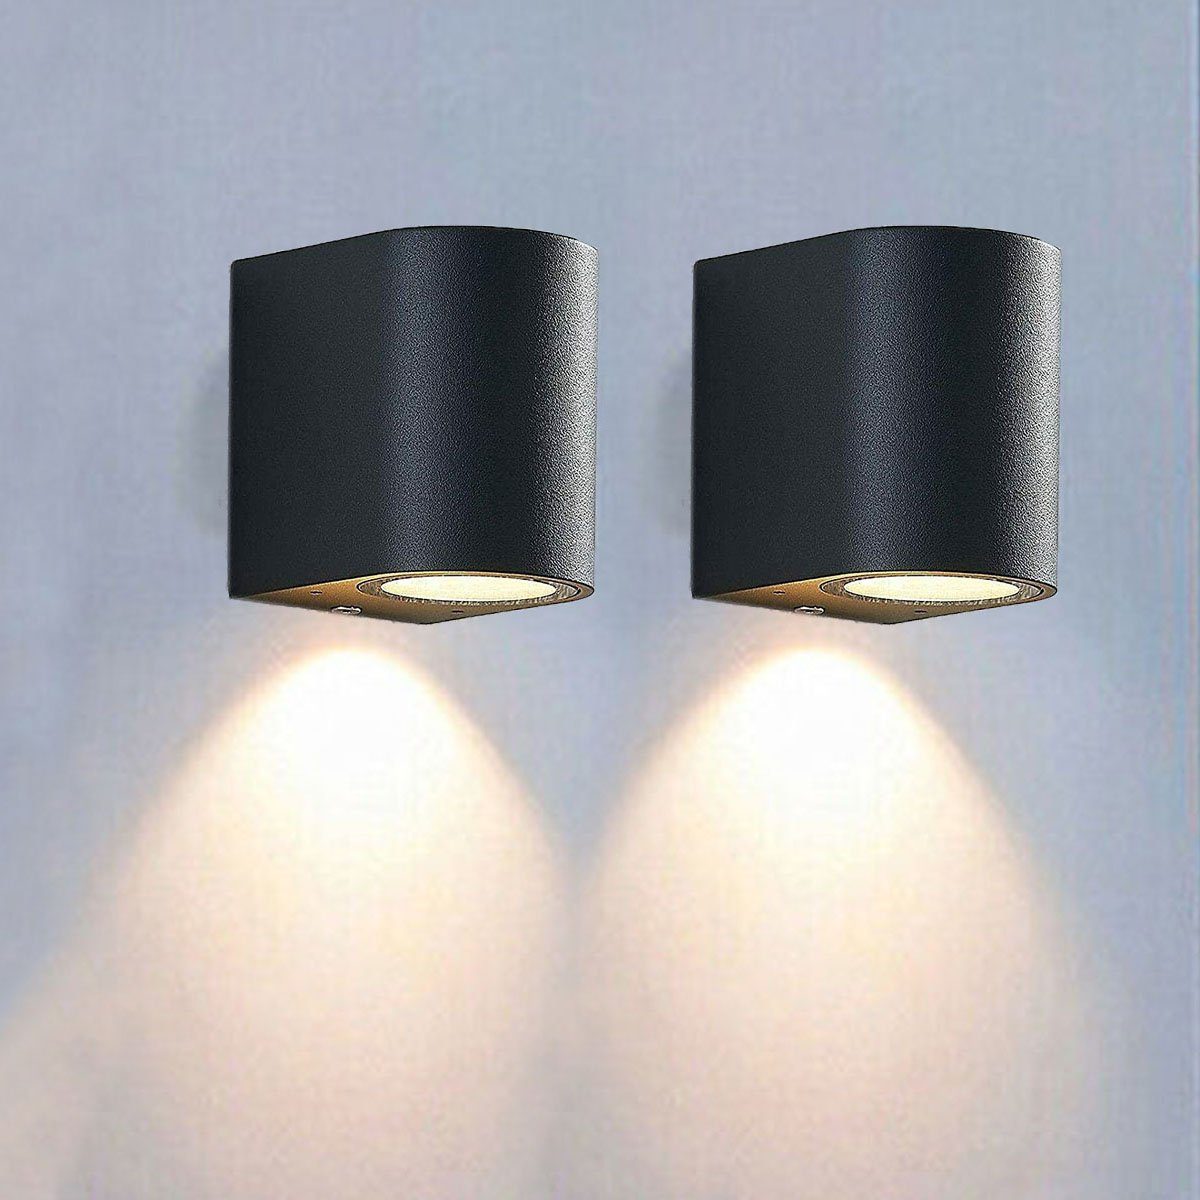 Wandlampe,IP65 oyajia LED 2x Anthrazit Wandleuchte Warmweiß Downlight, 3W